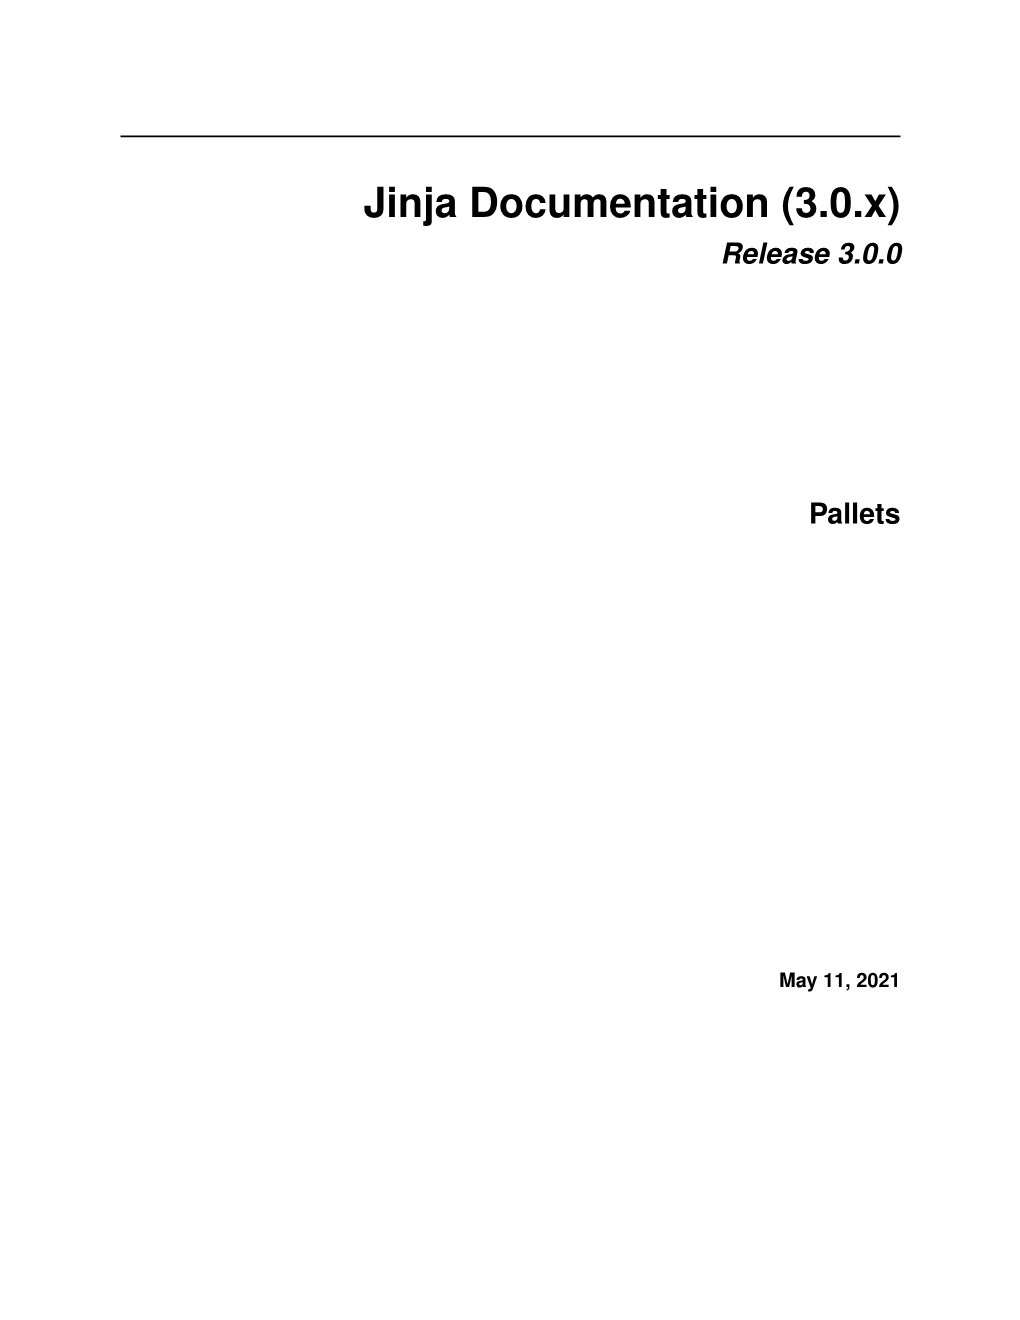 Jinja Documentation (3.0.X) Release 3.0.0